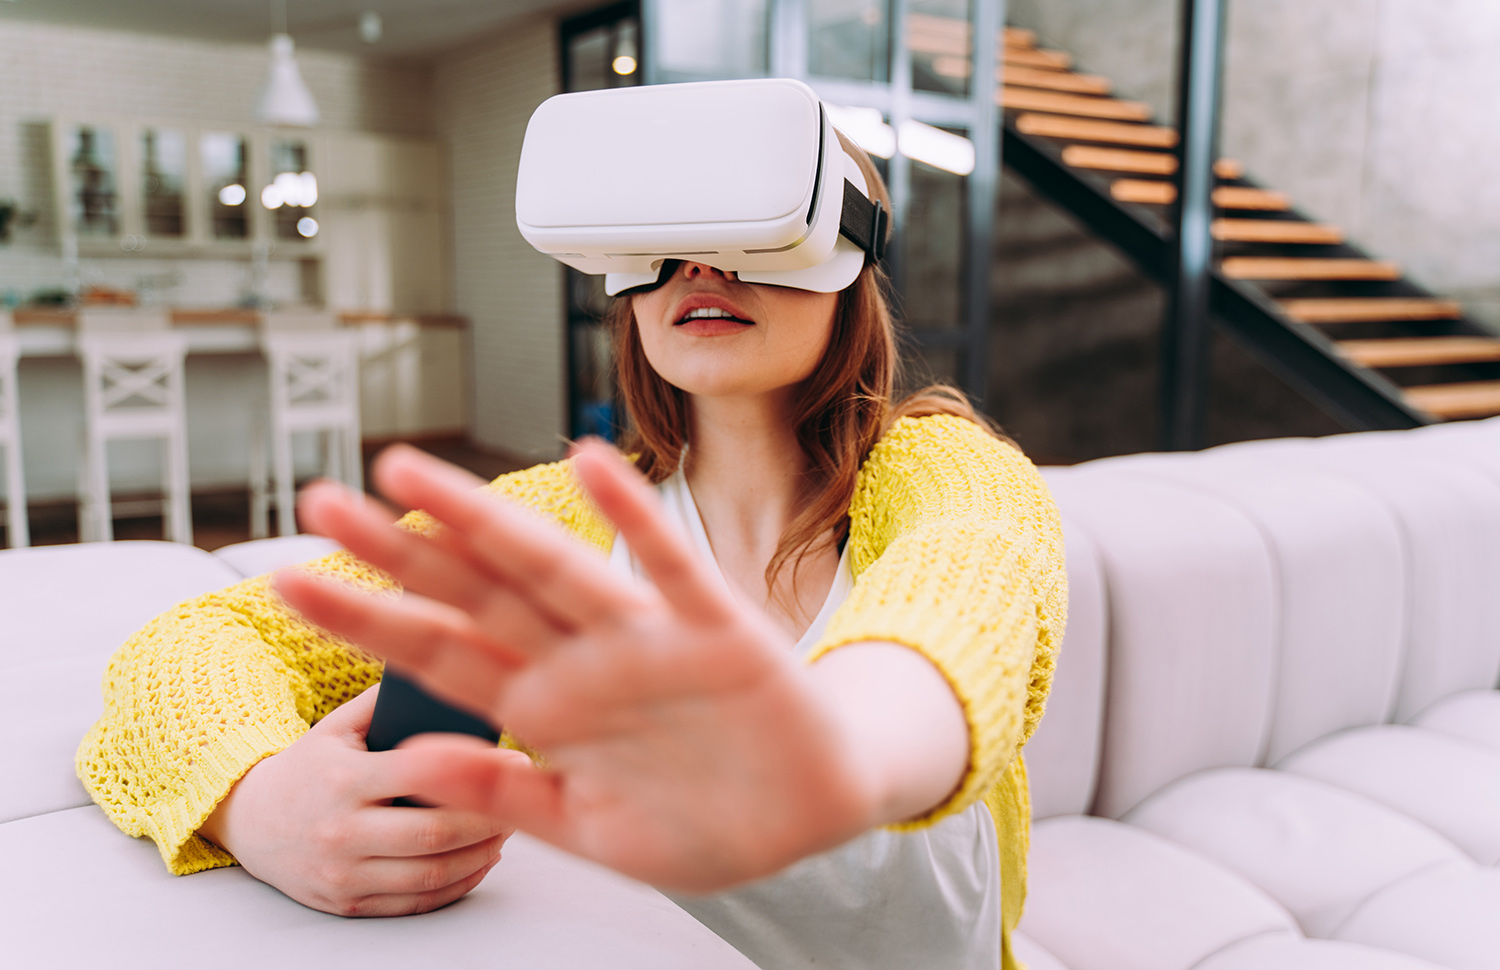 Realitatea Mixtă Este Unul Dintre Cele 5 Trenduri Ale Digitalului În 2020